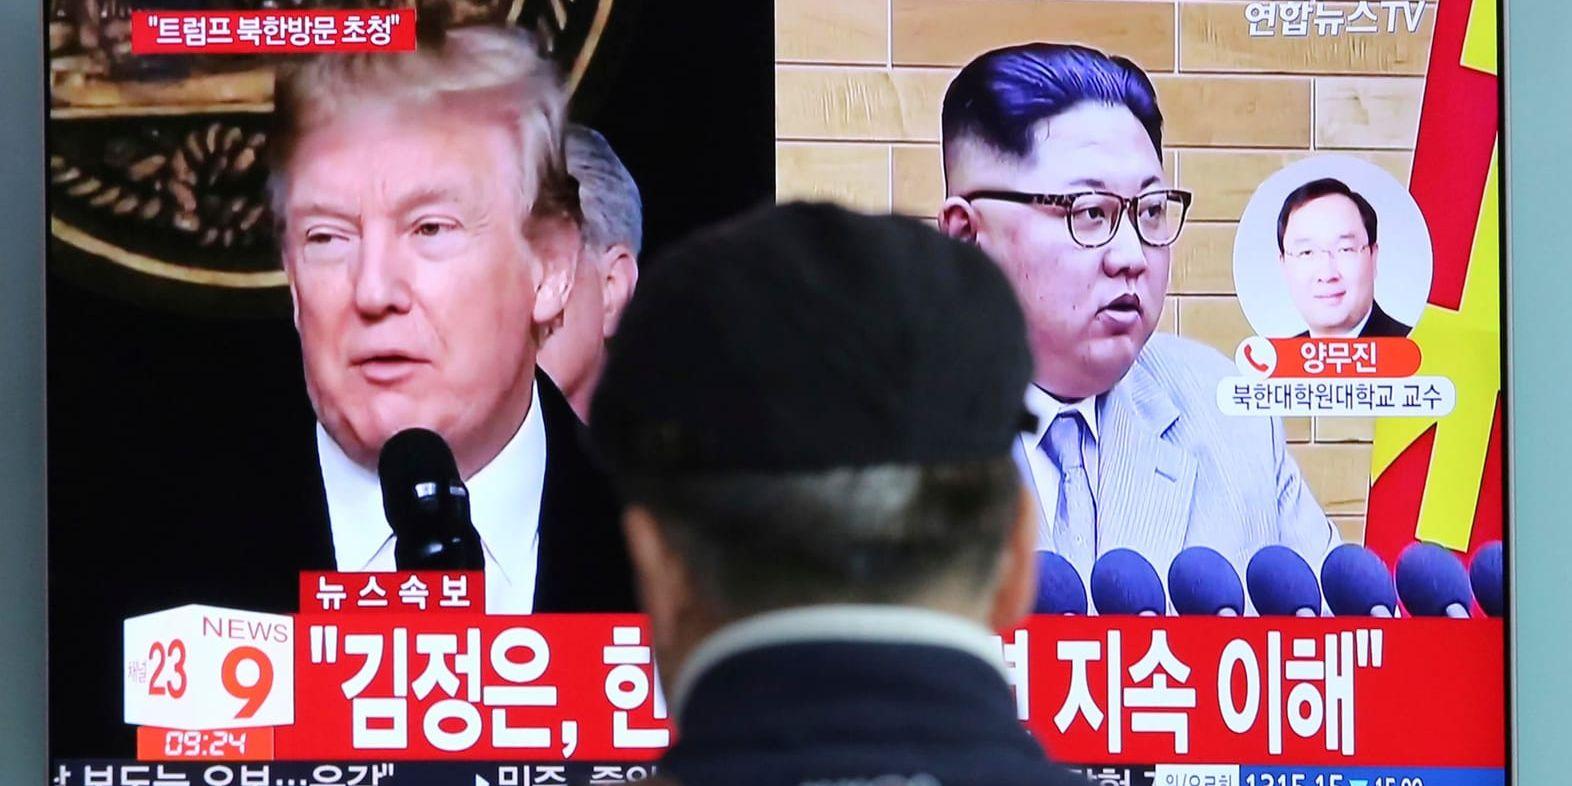 Spekulationerna är igång kring mötesplatsen för USA:s president Donald Trump och Nordkoreas diktator Kim Jong-Un. Arkivbild.